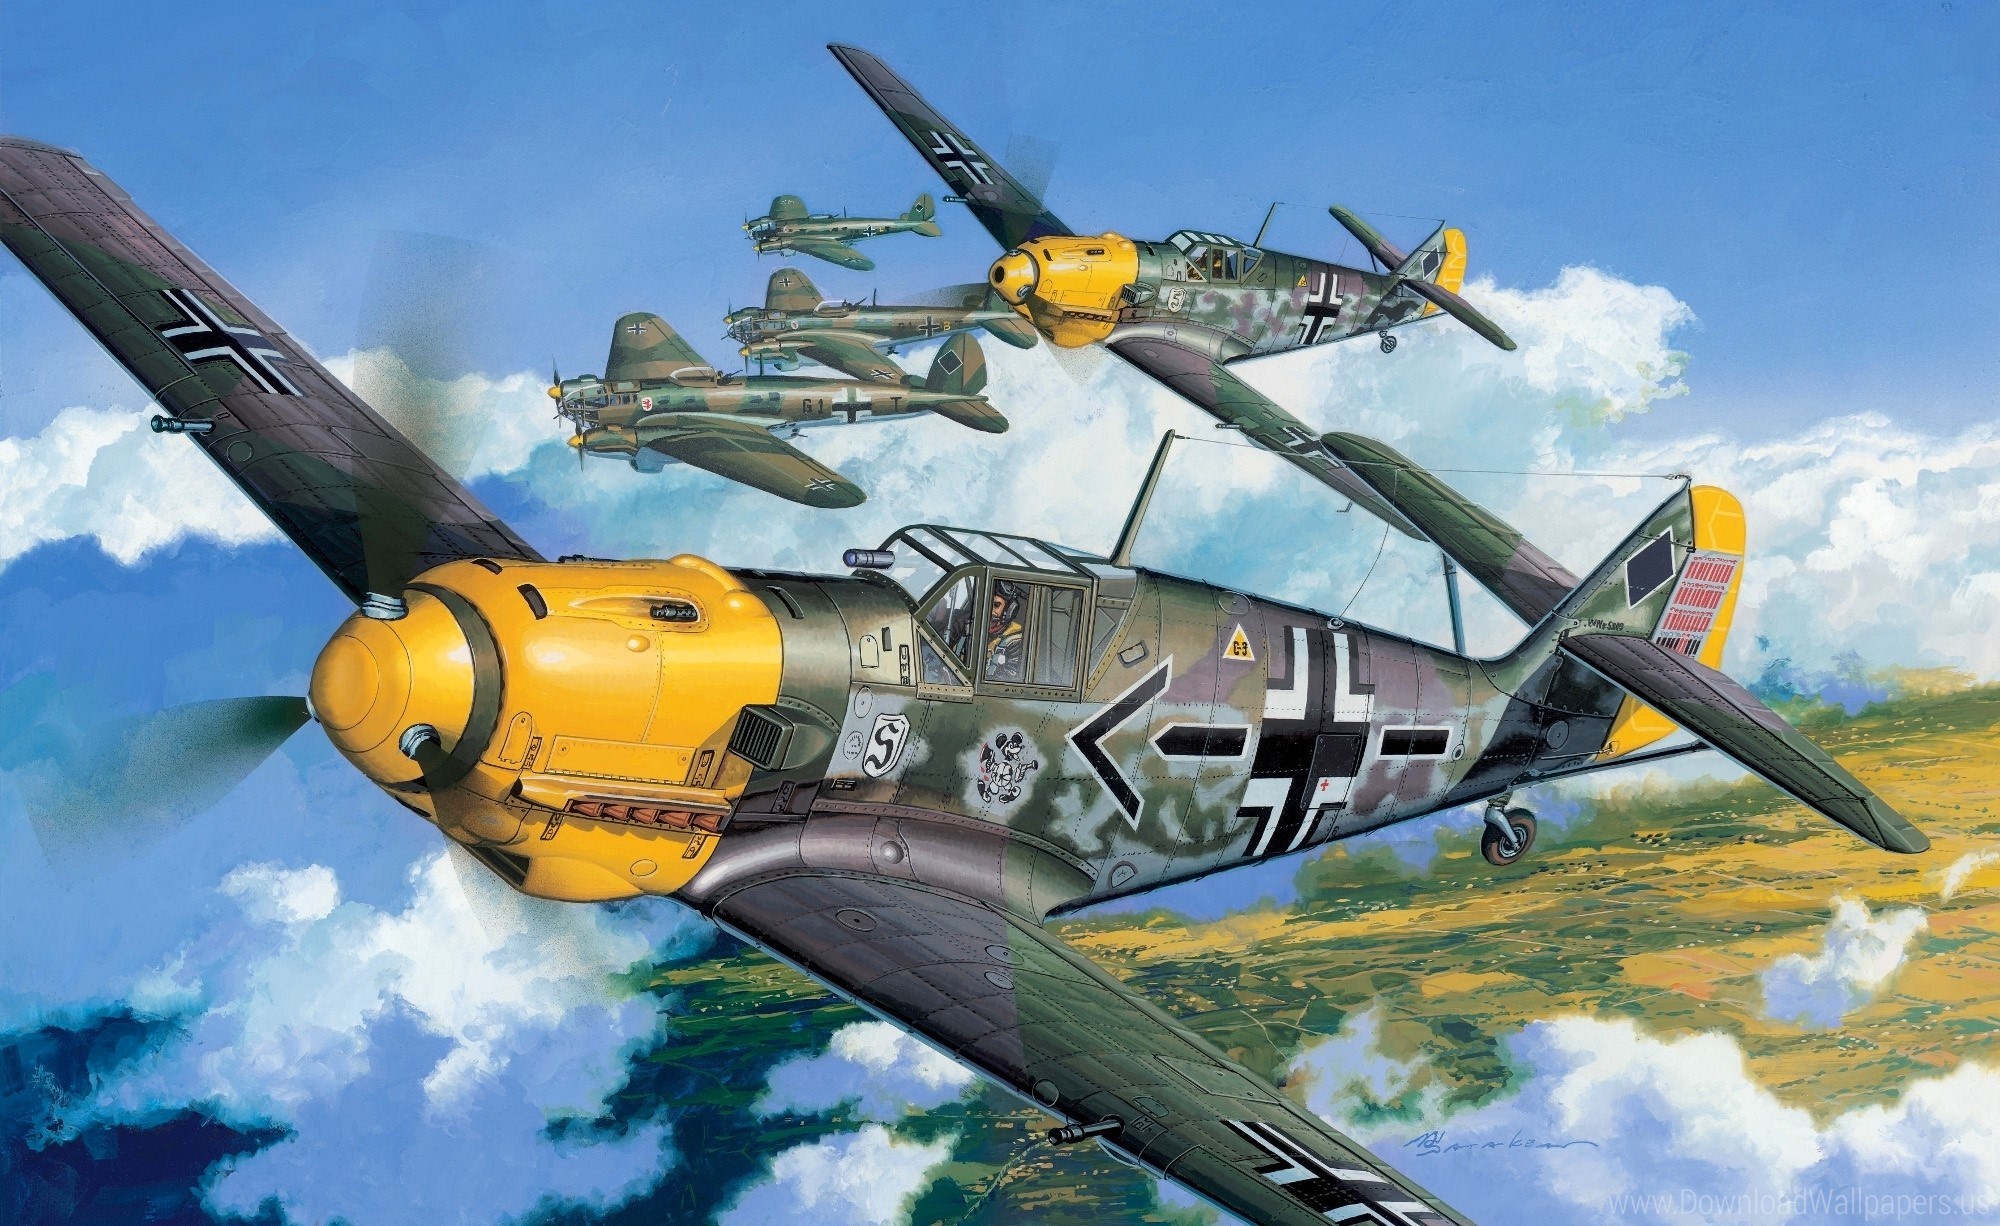 Download Original Size - Cyber Hobby Messerschmitt Bf 109 E 4 , HD Wallpaper & Backgrounds